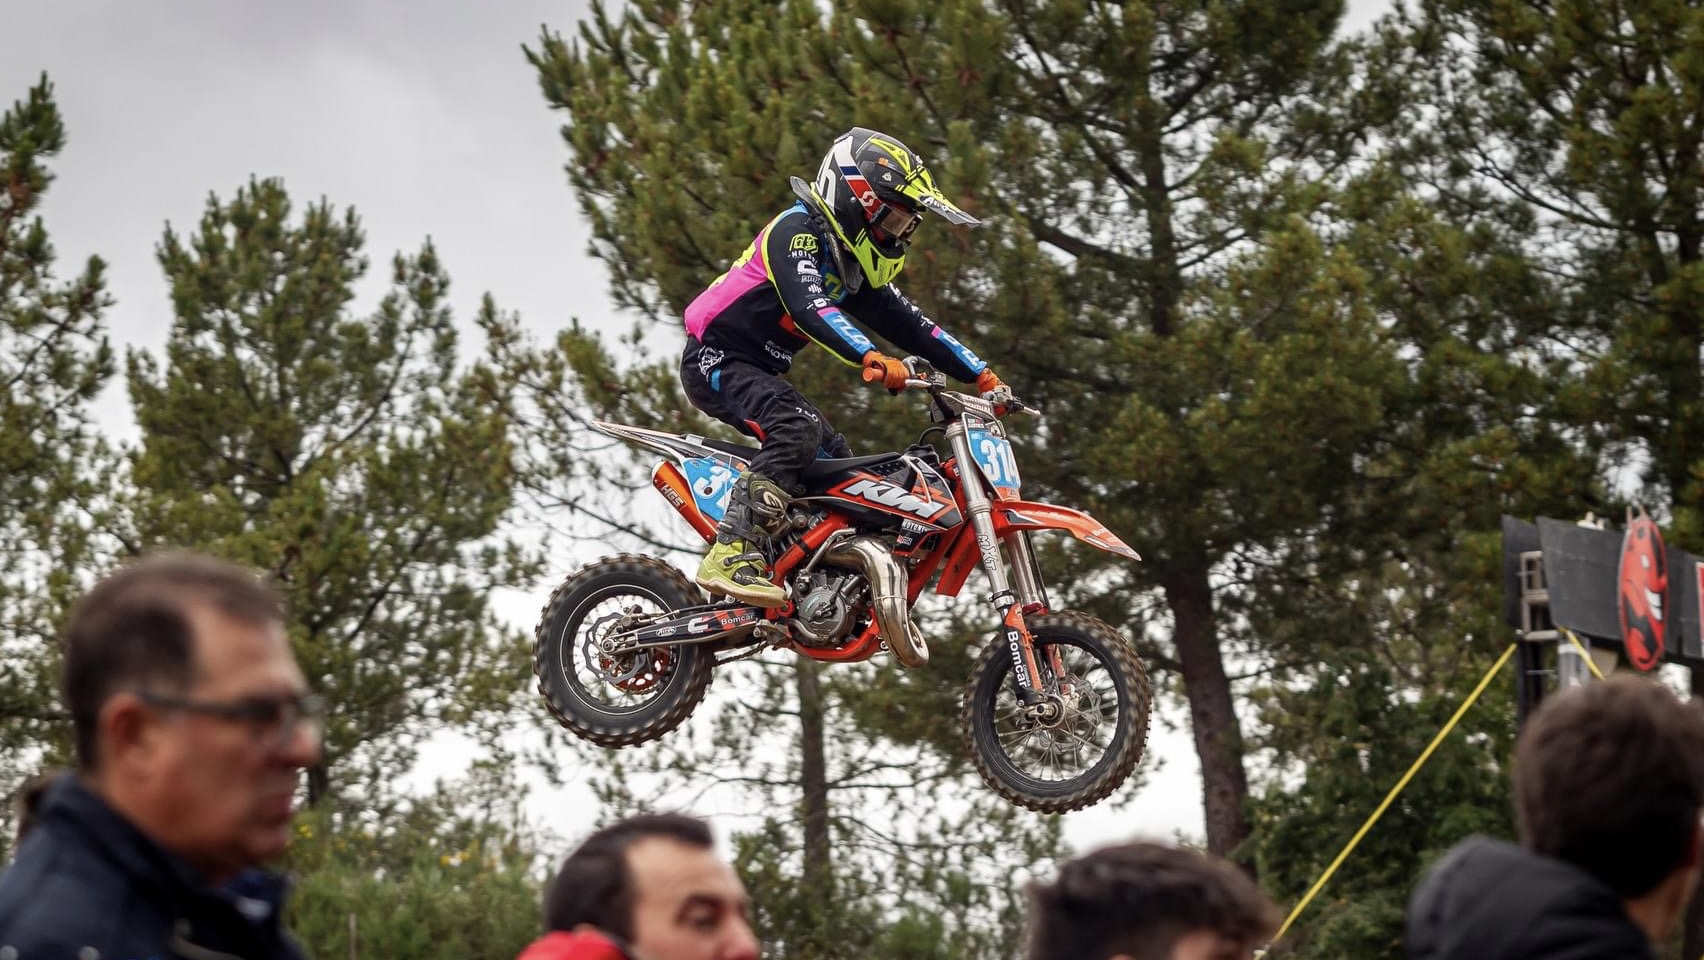 Europeu Motocross, EMX65, Itália: Guilherme Gomes qualifica-se em 13.º thumbnail